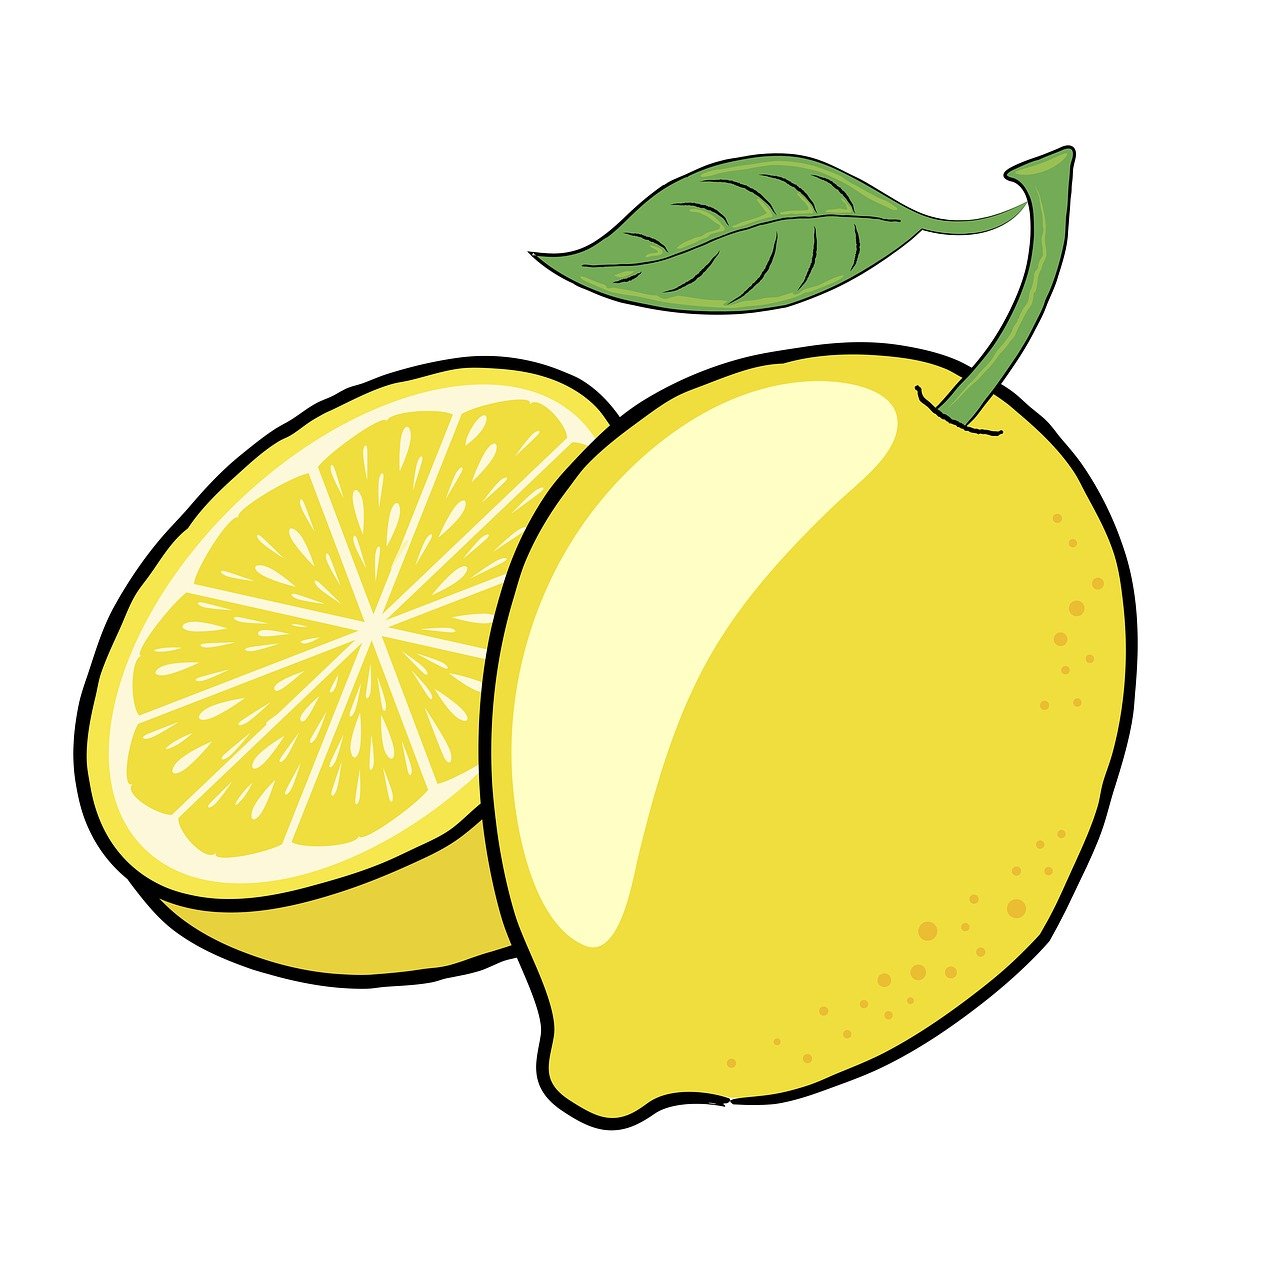 ¿Cuántos años tarda en crecer un árbol de limón?